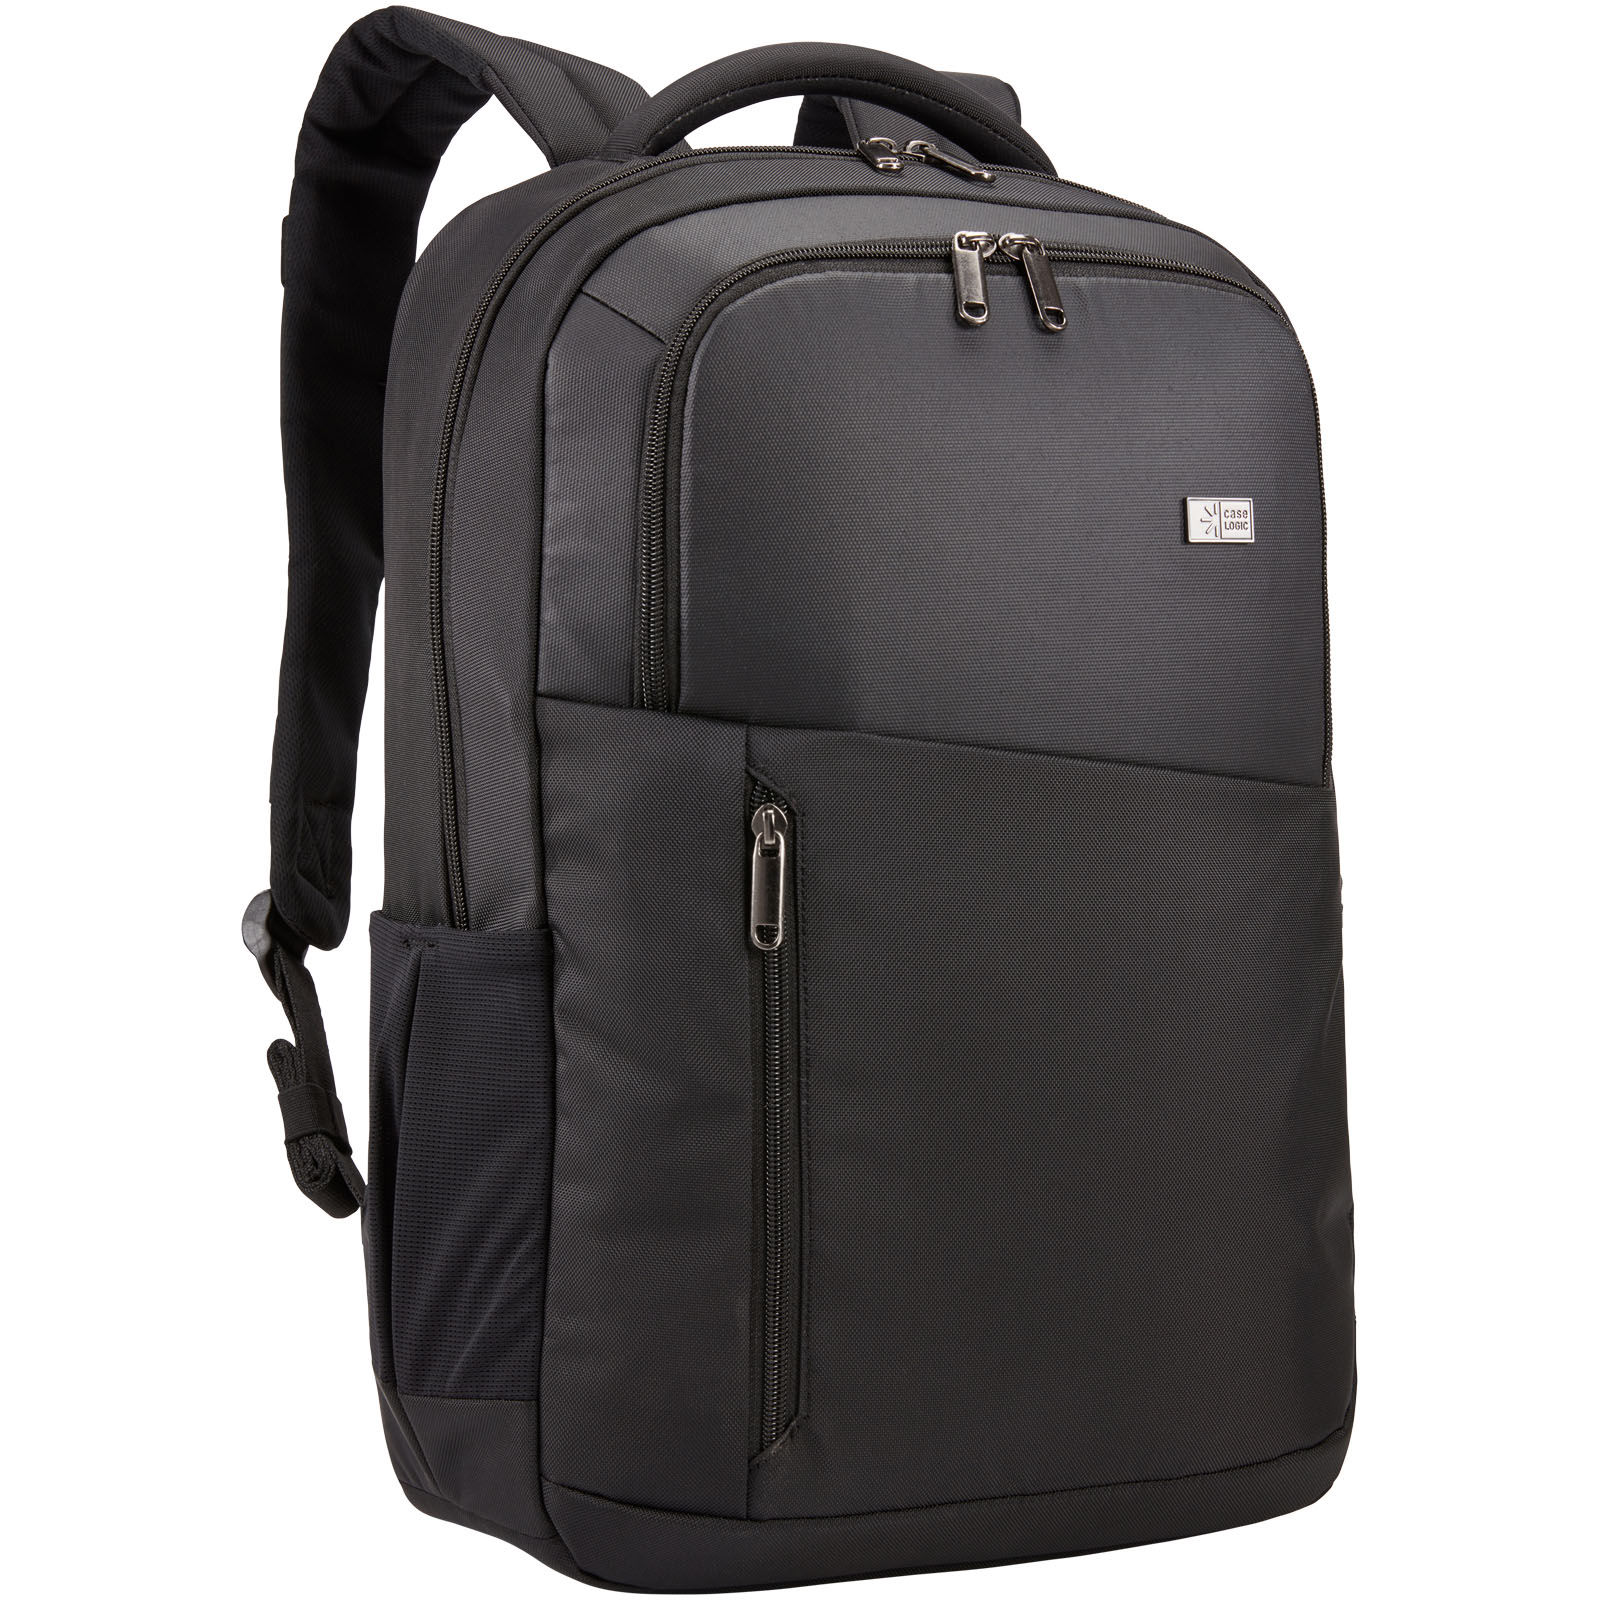 Branded laptop backpack Case Logic PROPEL - solid black